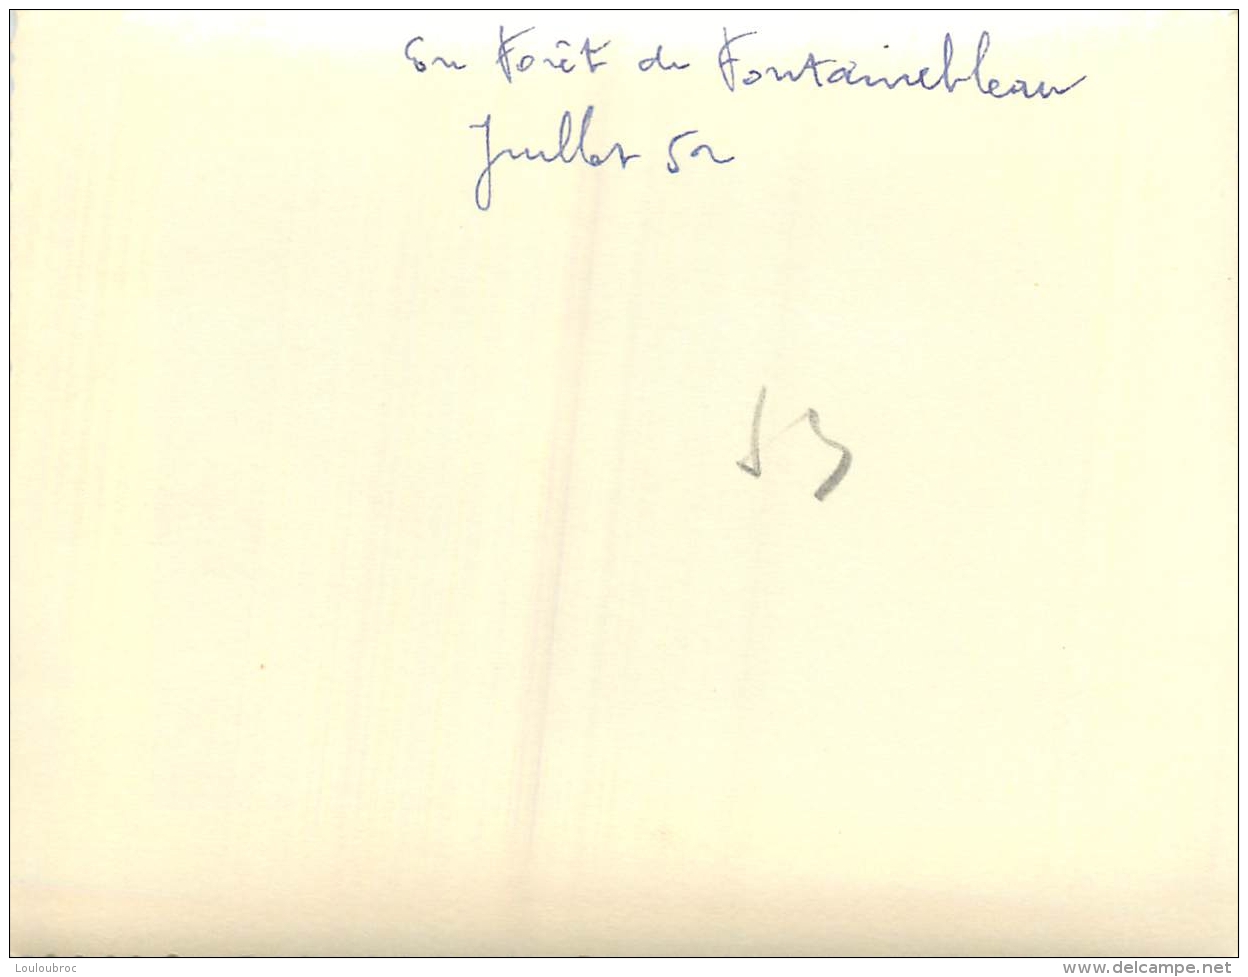 PHOTO ORIGINALE  FORET DE FONTAINEBLEAU 1952   FORMAT  10.50 X 8 CM - Lieux